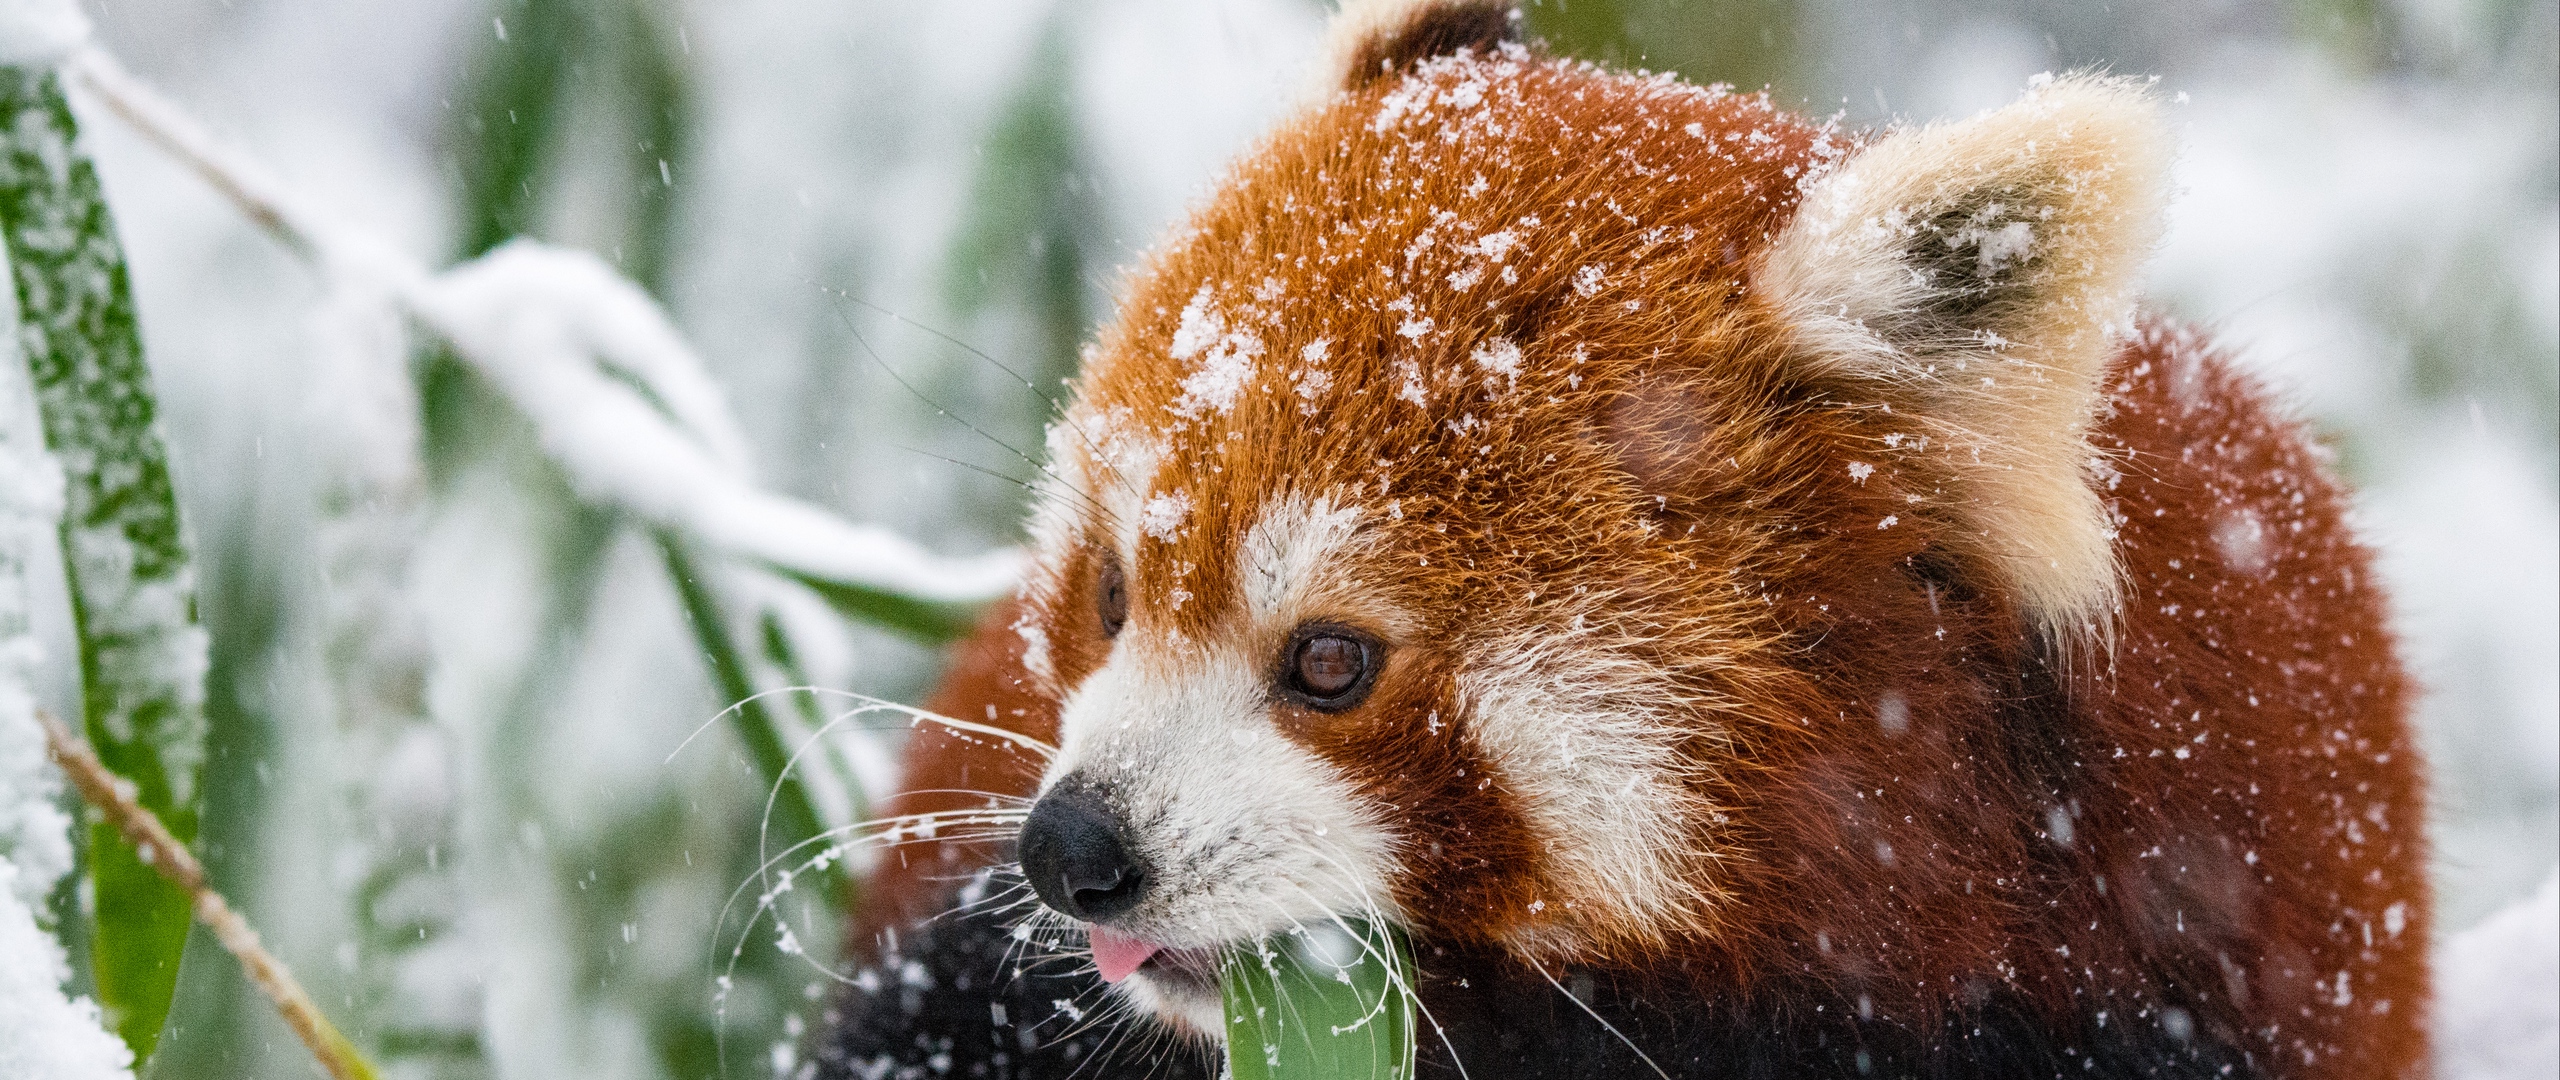 fond d'écran panda,panda rouge,animal terrestre,moustaches,museau,faune